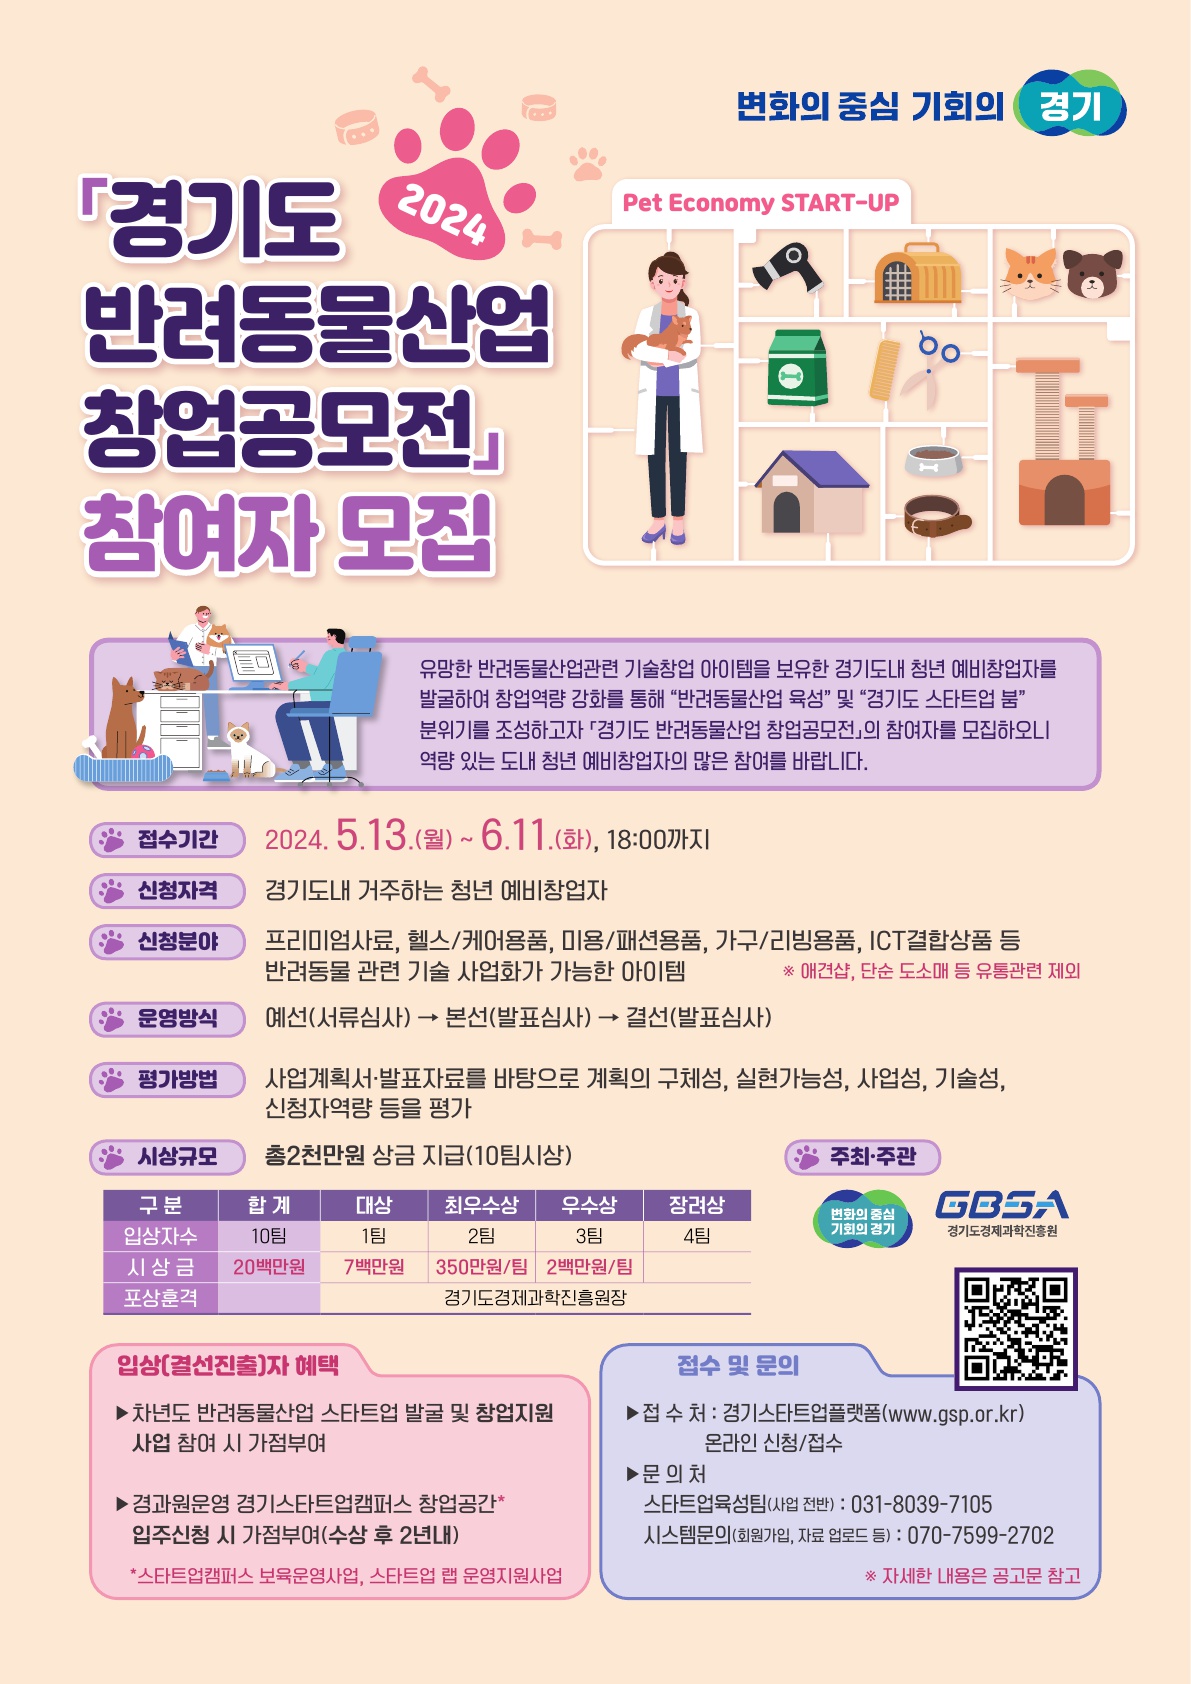 「경기도 반려동물산업 창업공모전」 참여자 모집 공고